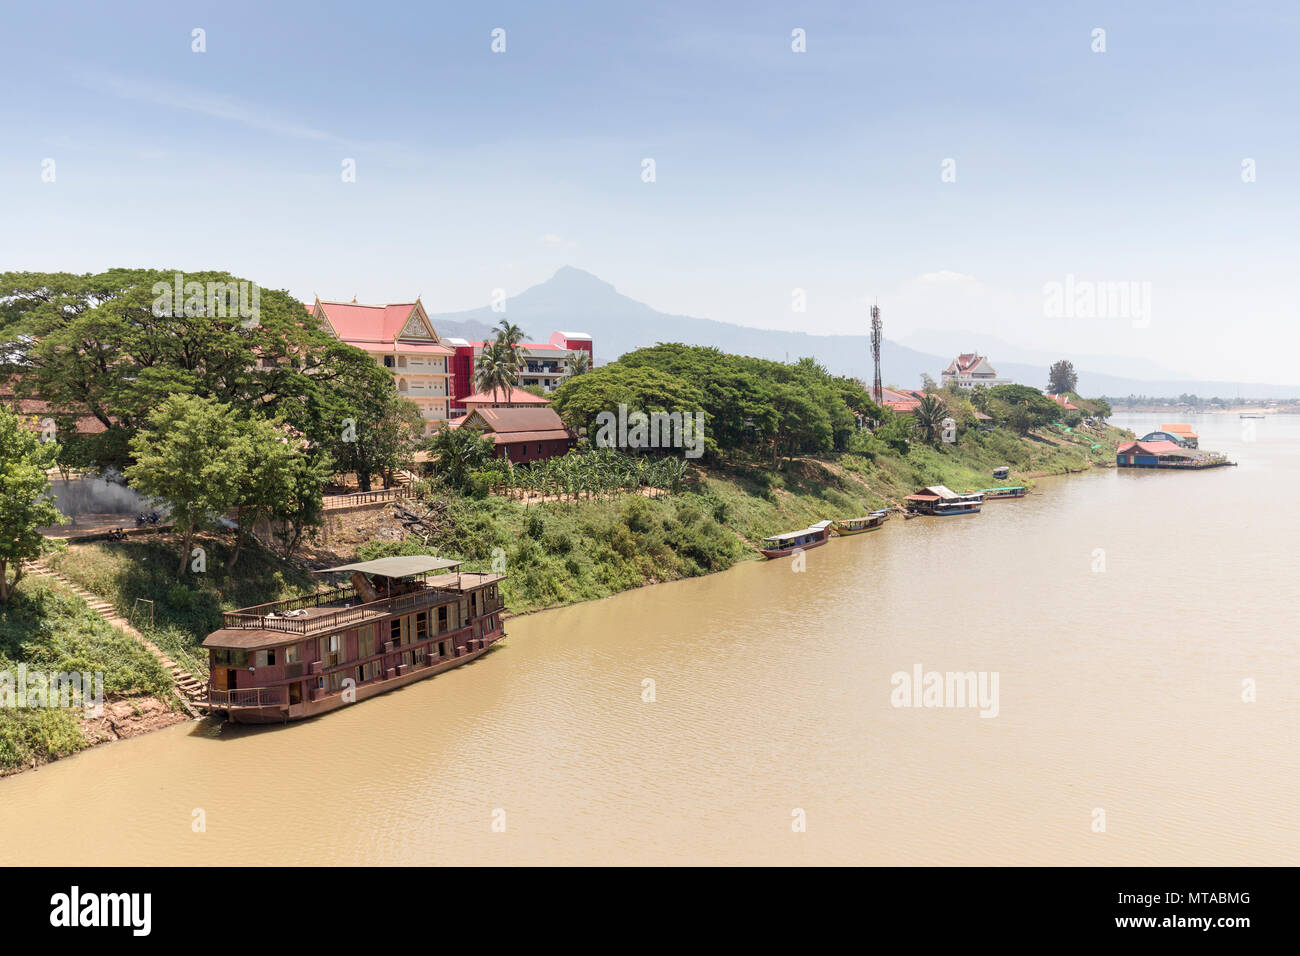 Bateaux amarrés sur le Xe Don affluent de la rivière du Mékong, Vientiane, Laos Champassak, Banque D'Images